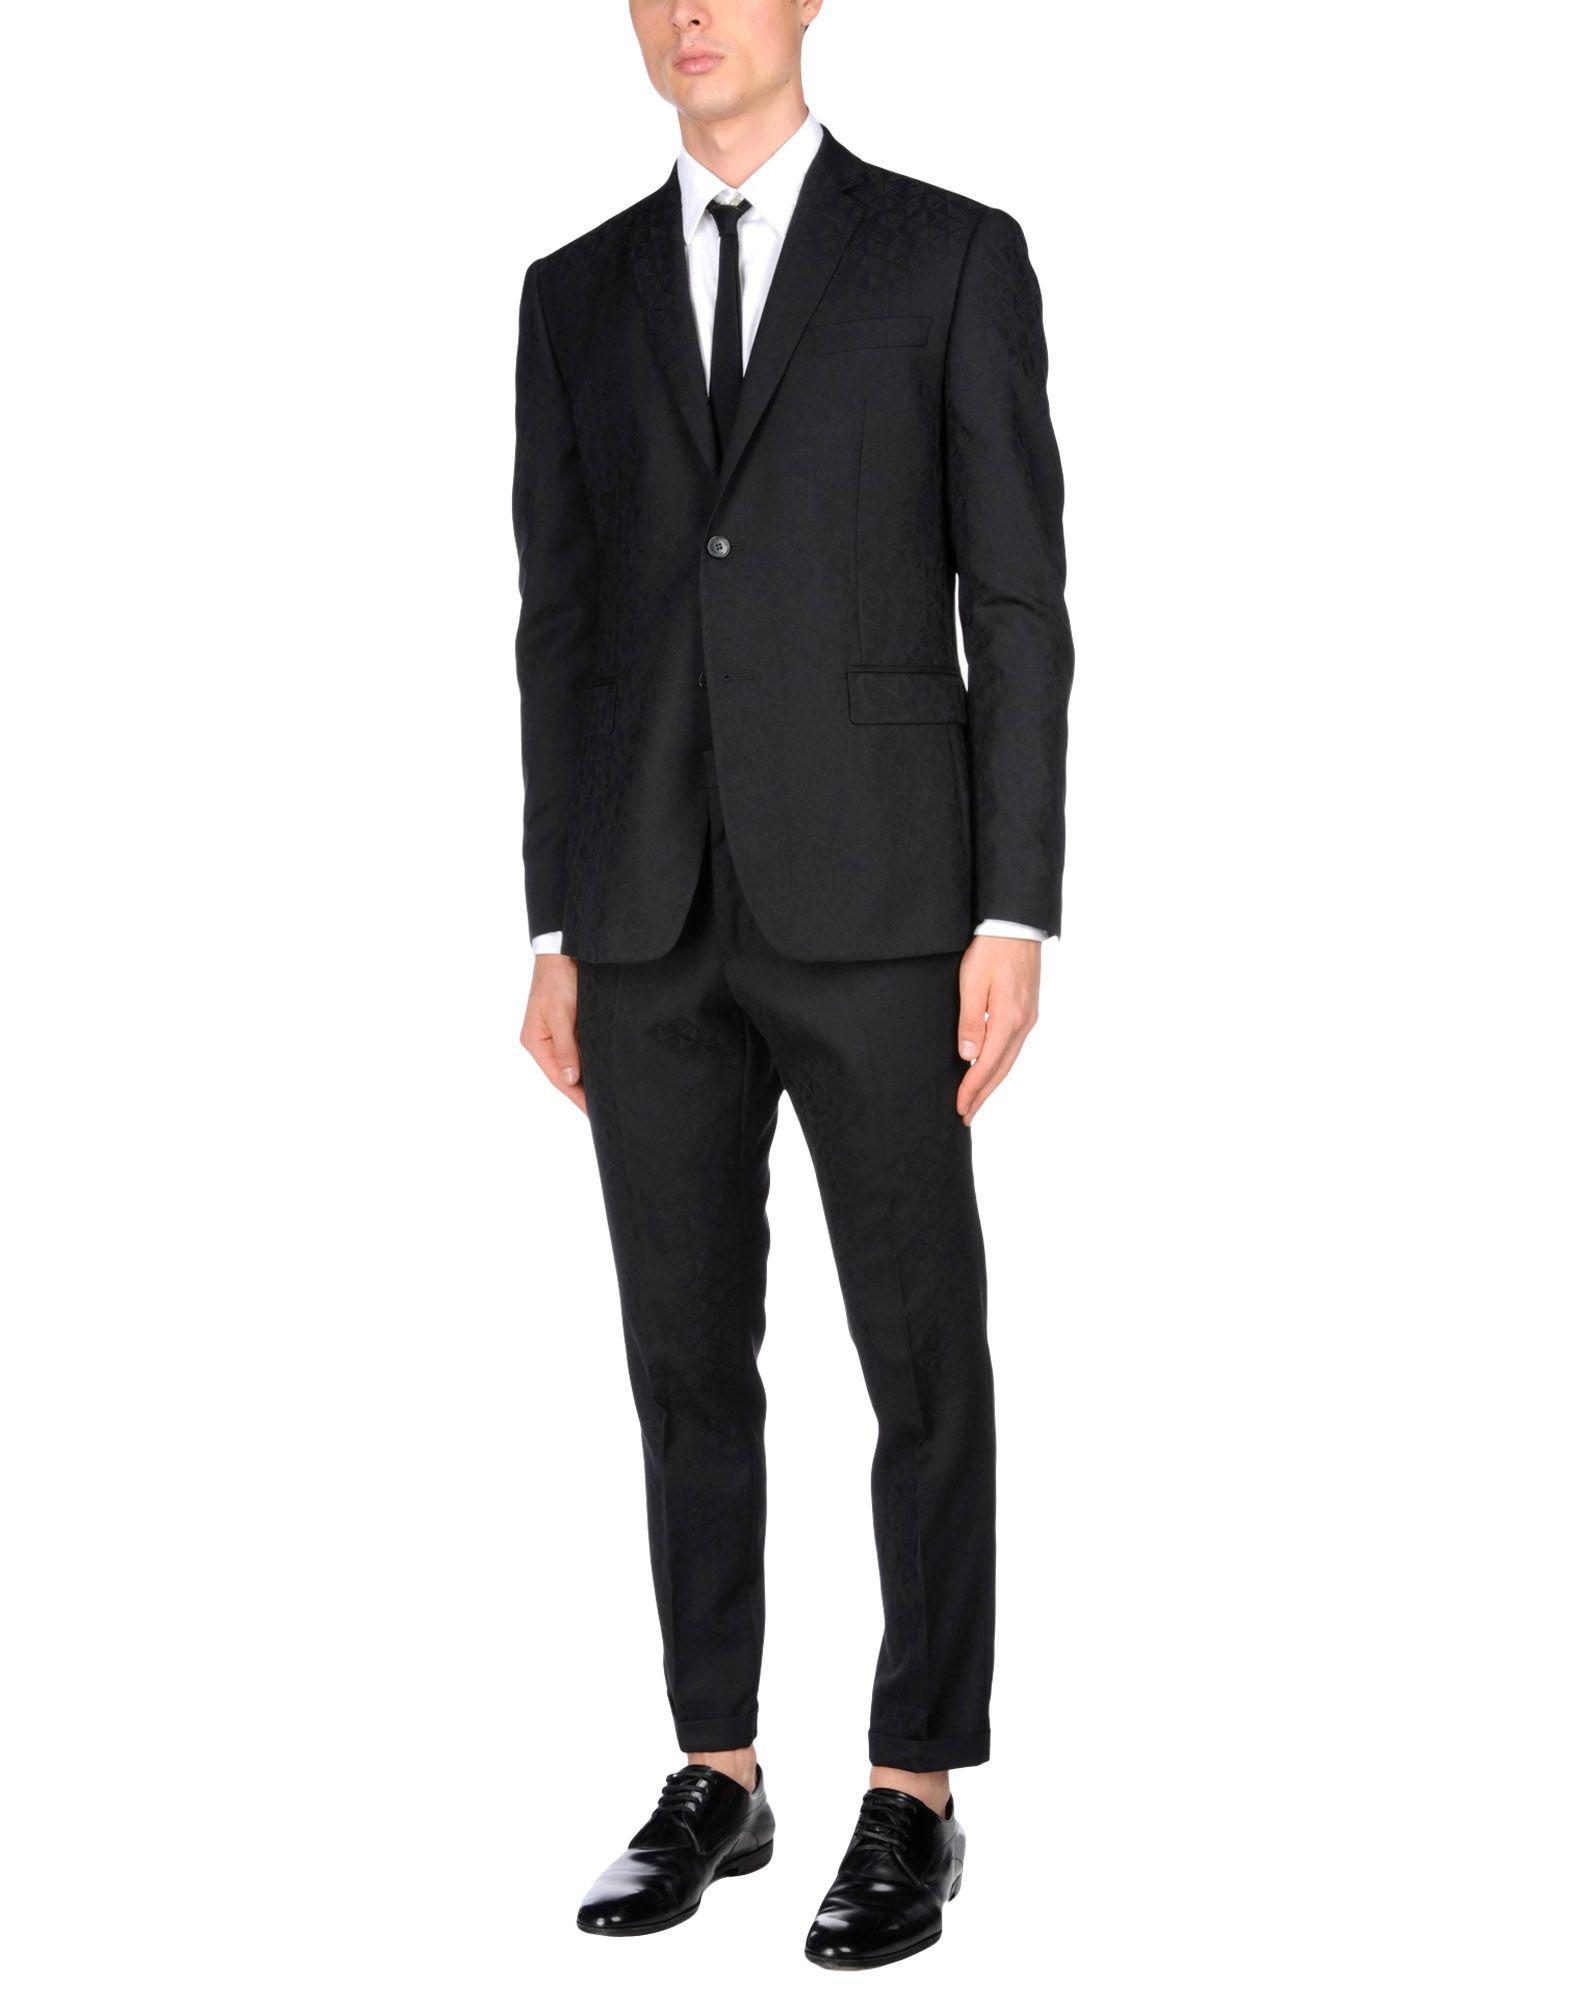 Lyst - Versace Suit in Black for Men